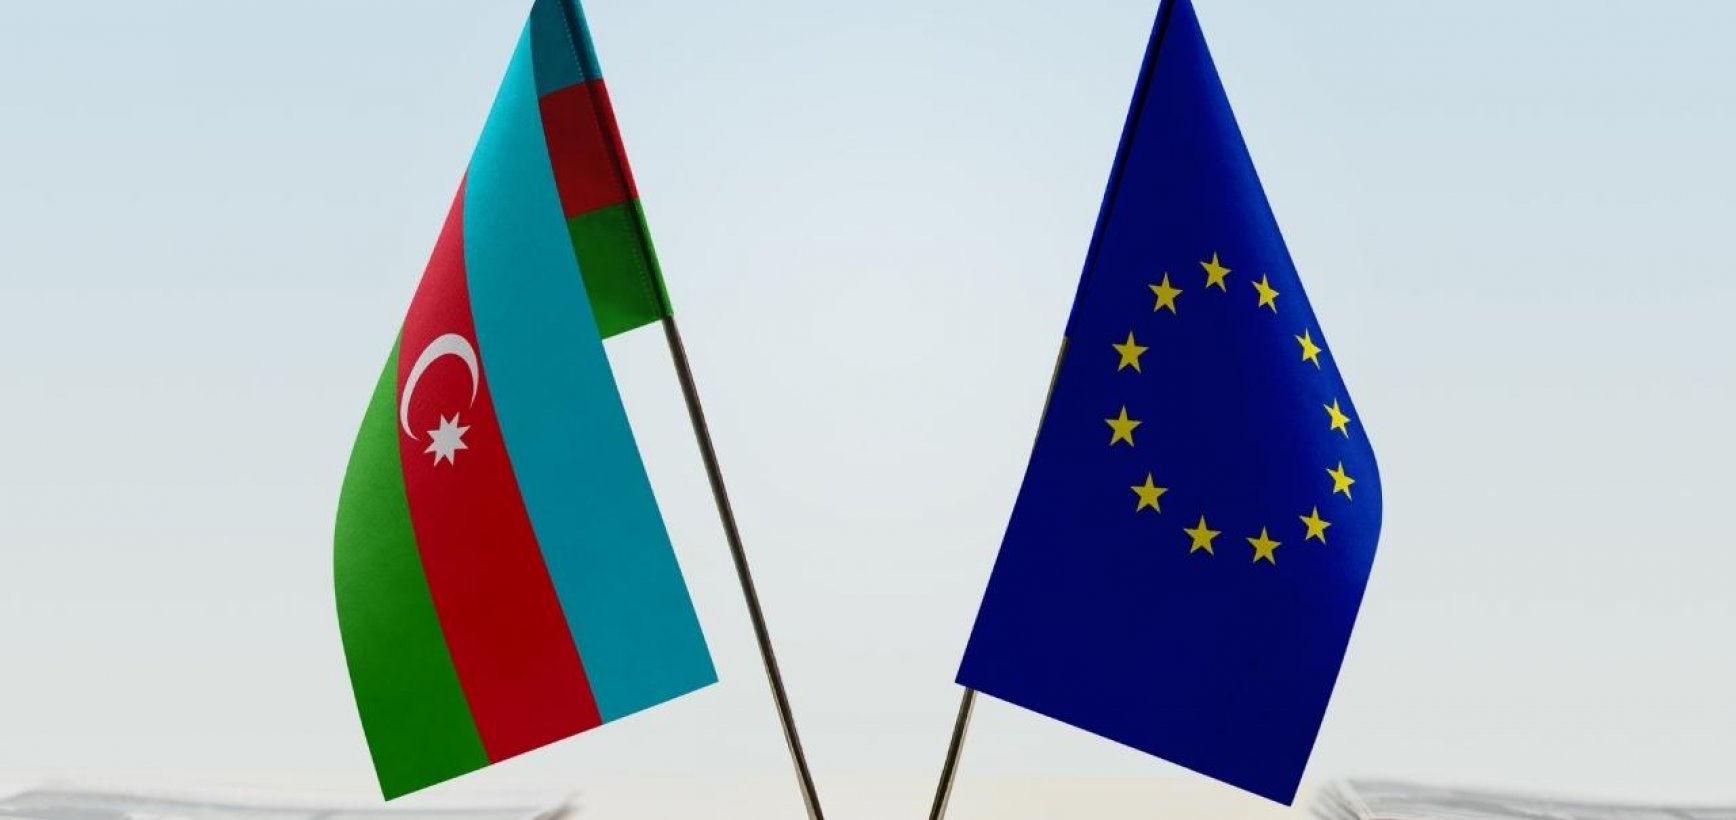 CPVA tarptautiniai projektai: ES tęsia bendradarbiavimą su Azerbaidžanu sveikatos priežiūros srityje